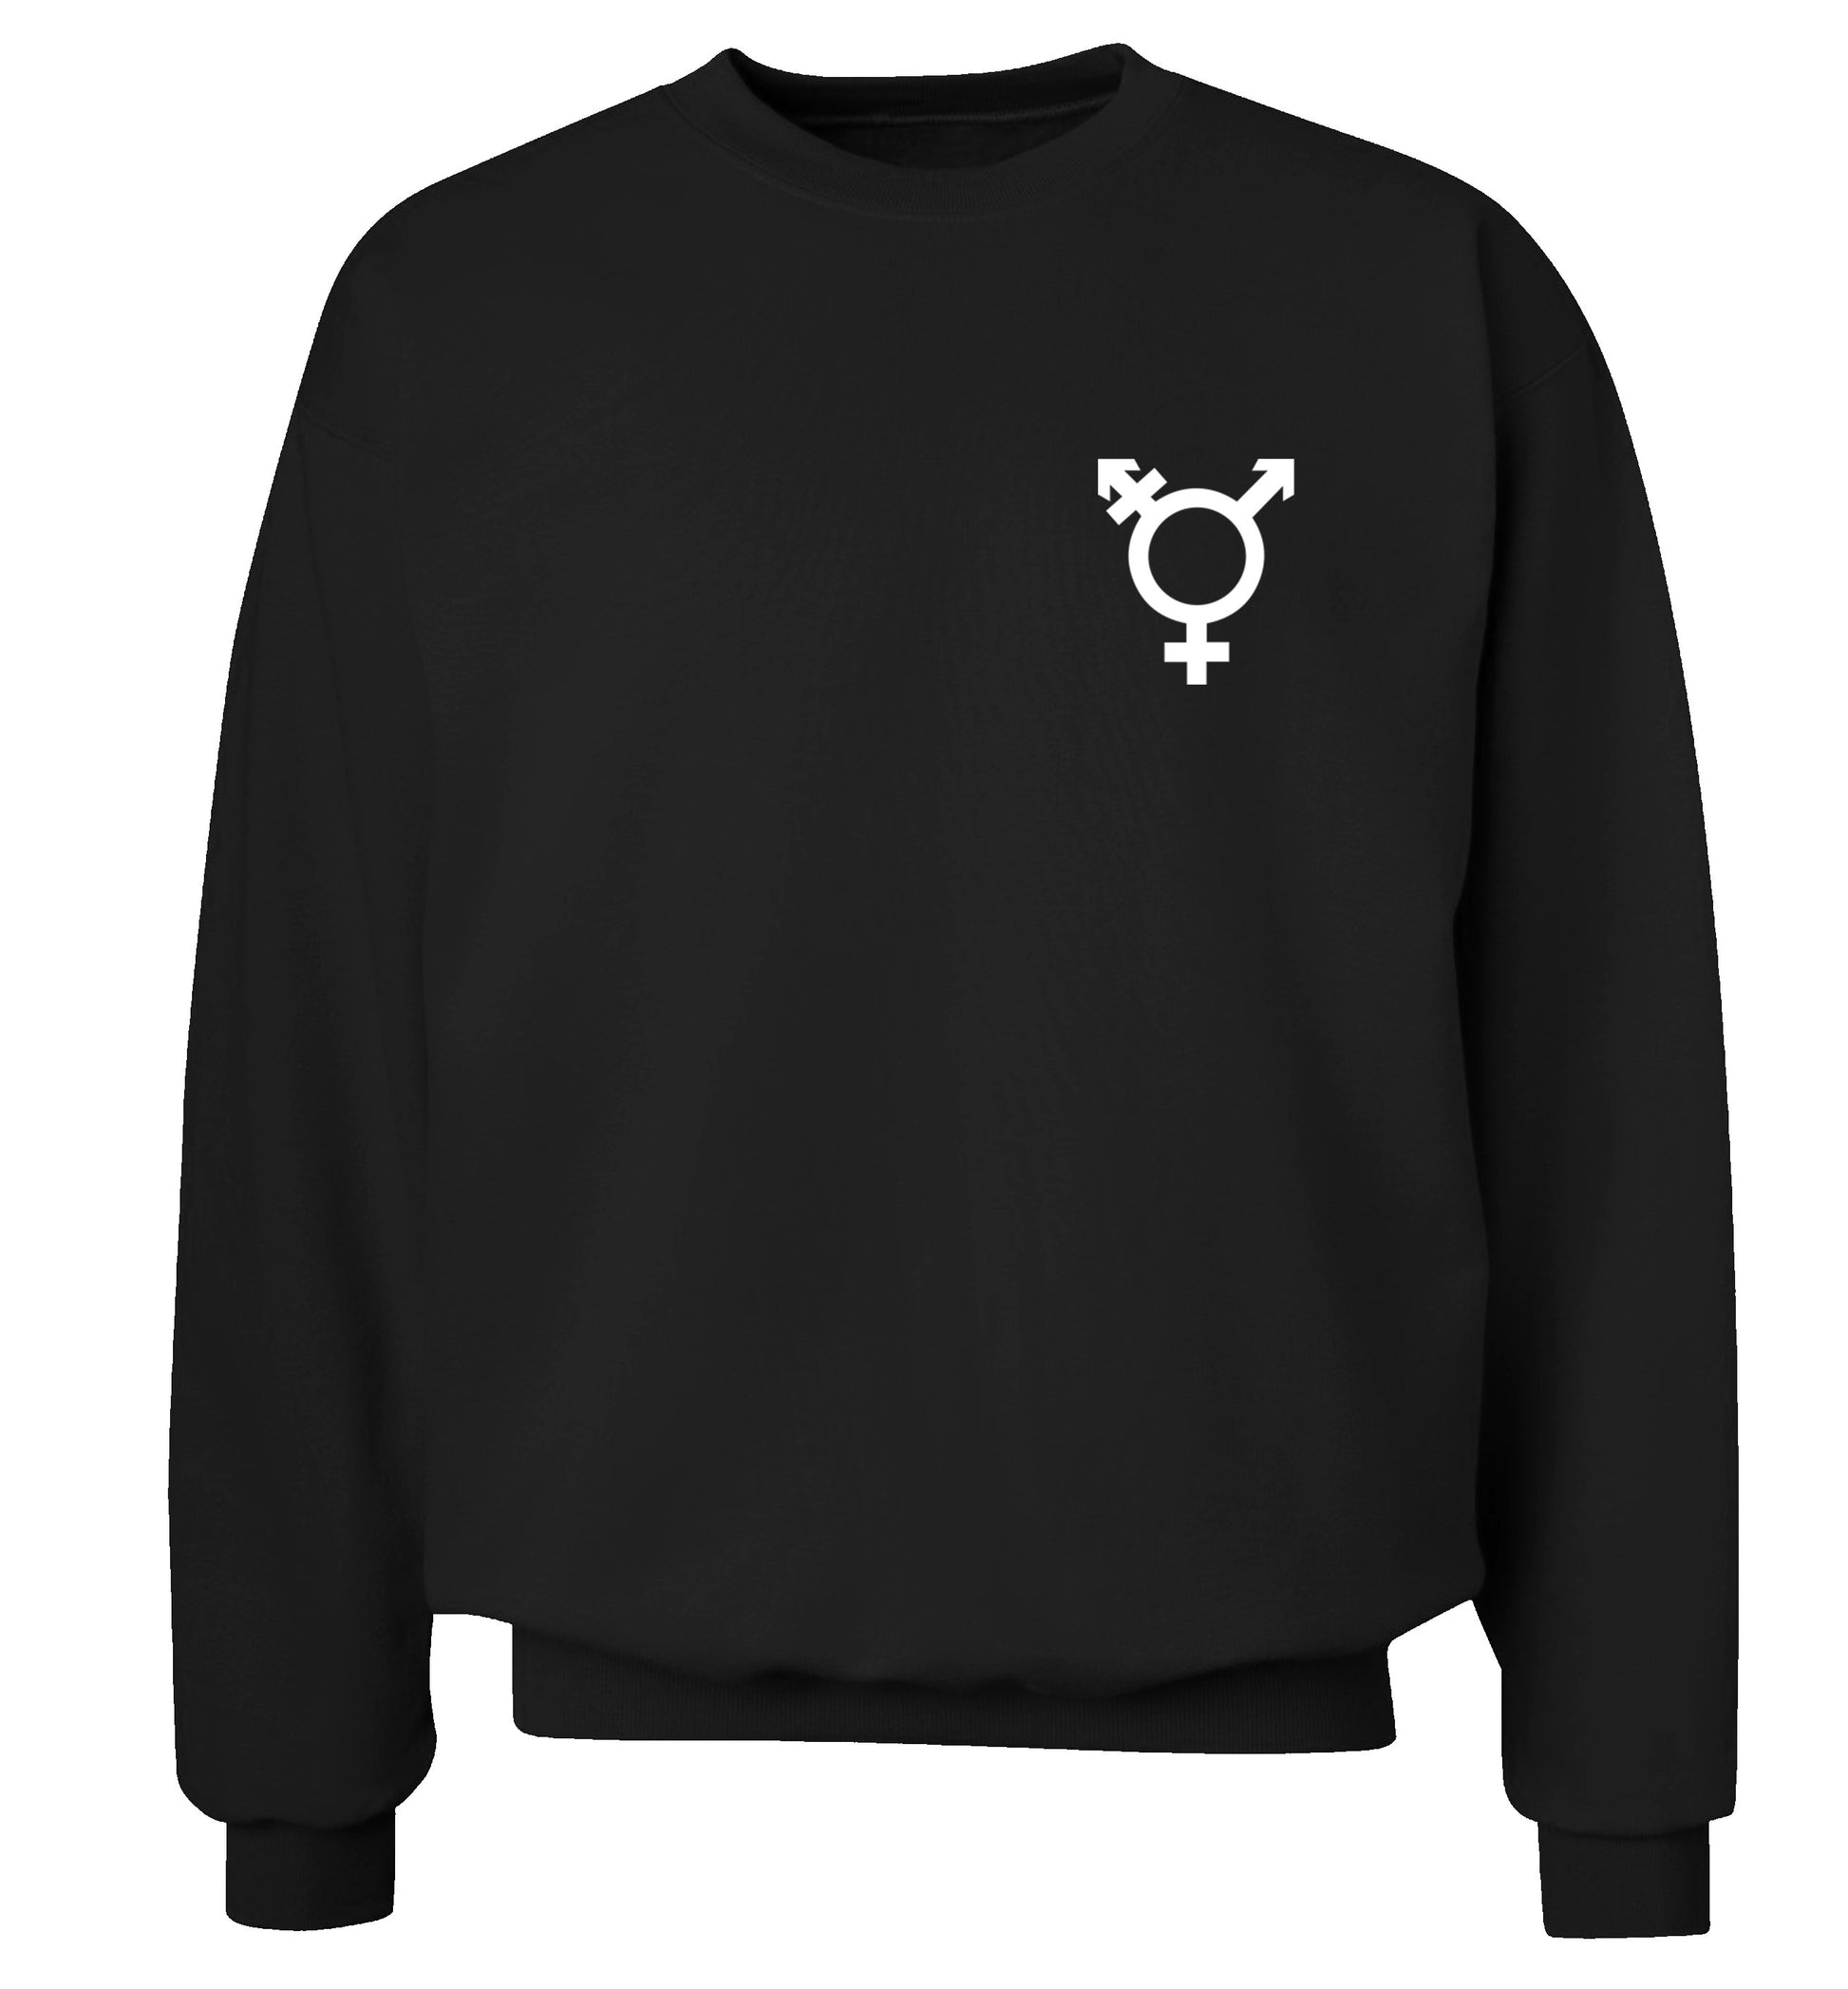 Trans gender symbol pocket Adult's unisex black Sweater 2XL